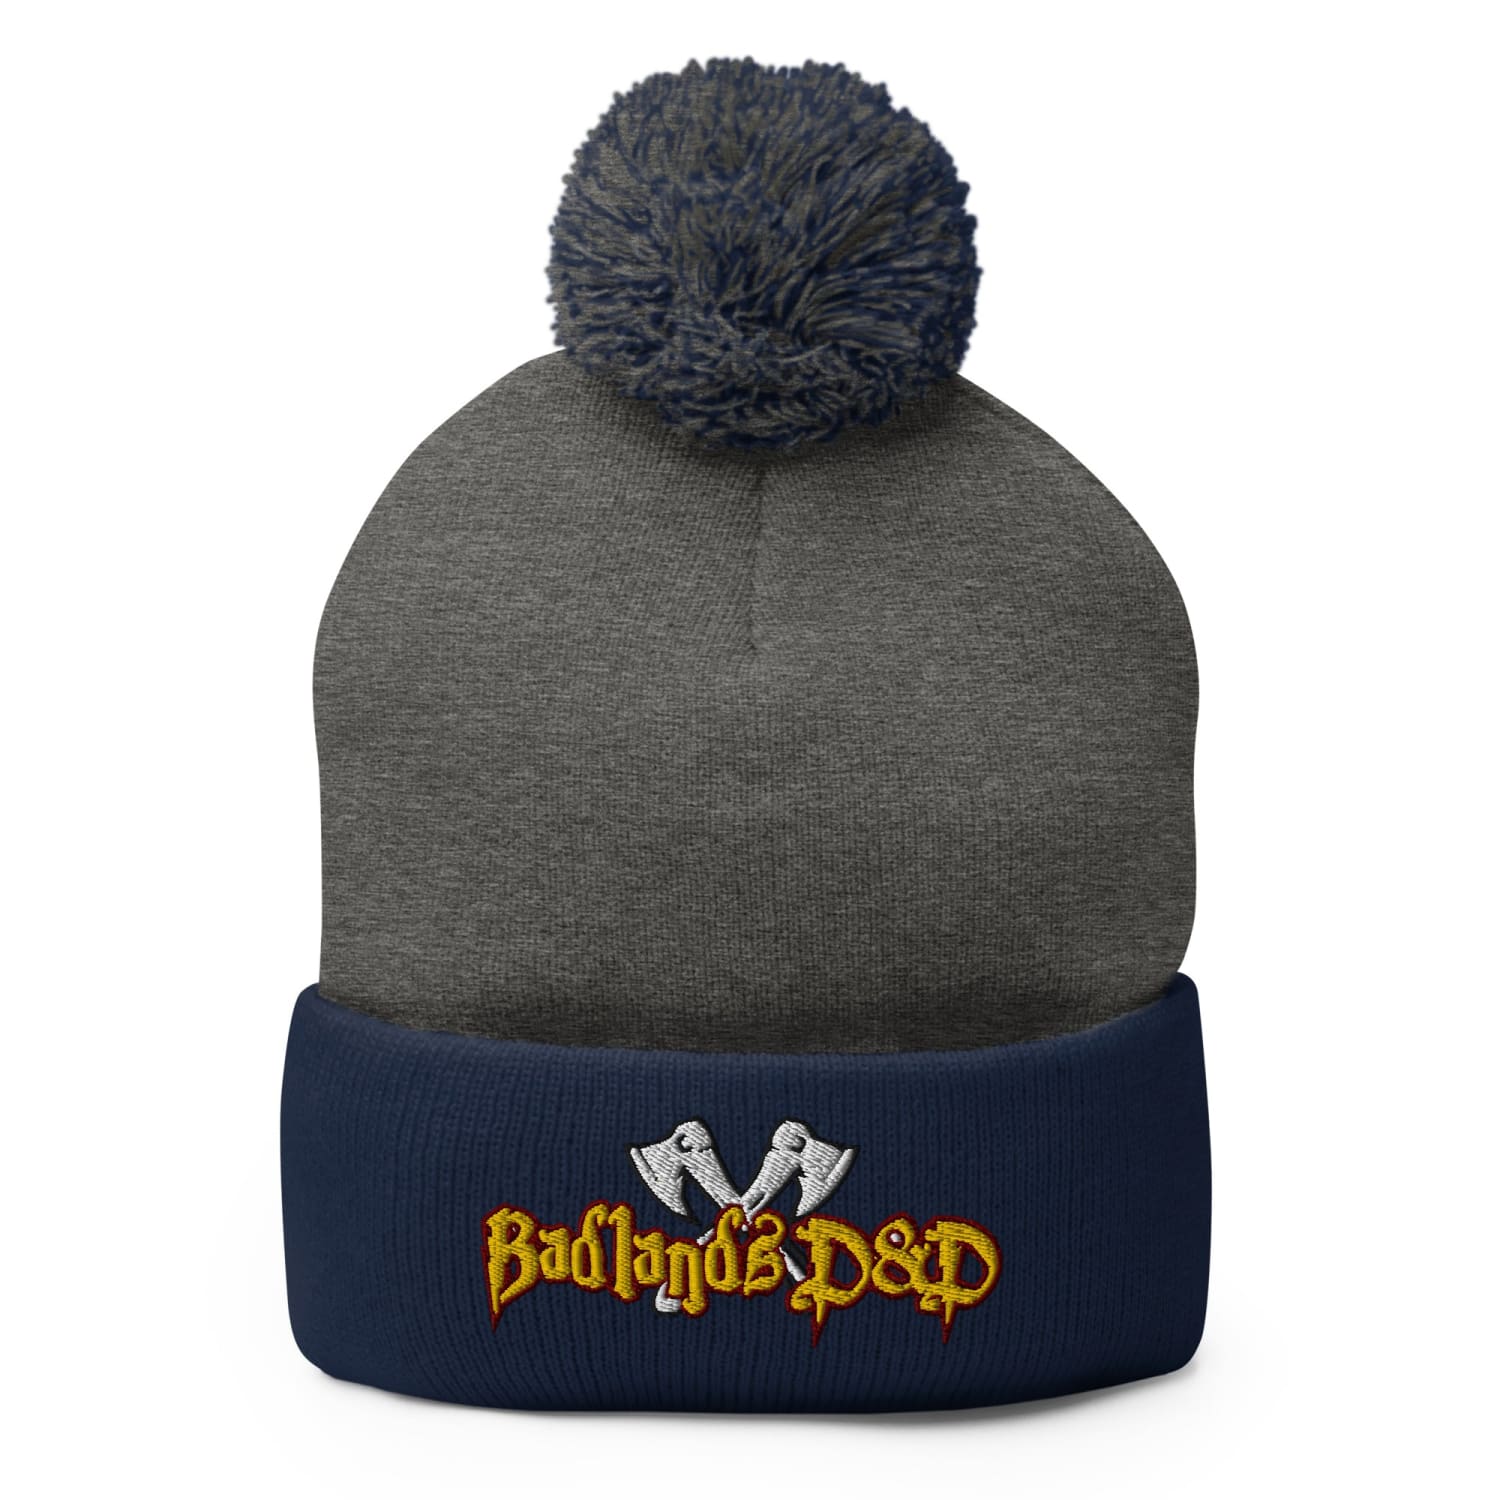 Badlands D&D Logo Pom-Pom Knit Beanie / Tuque - Dark Heather Grey/ Navy